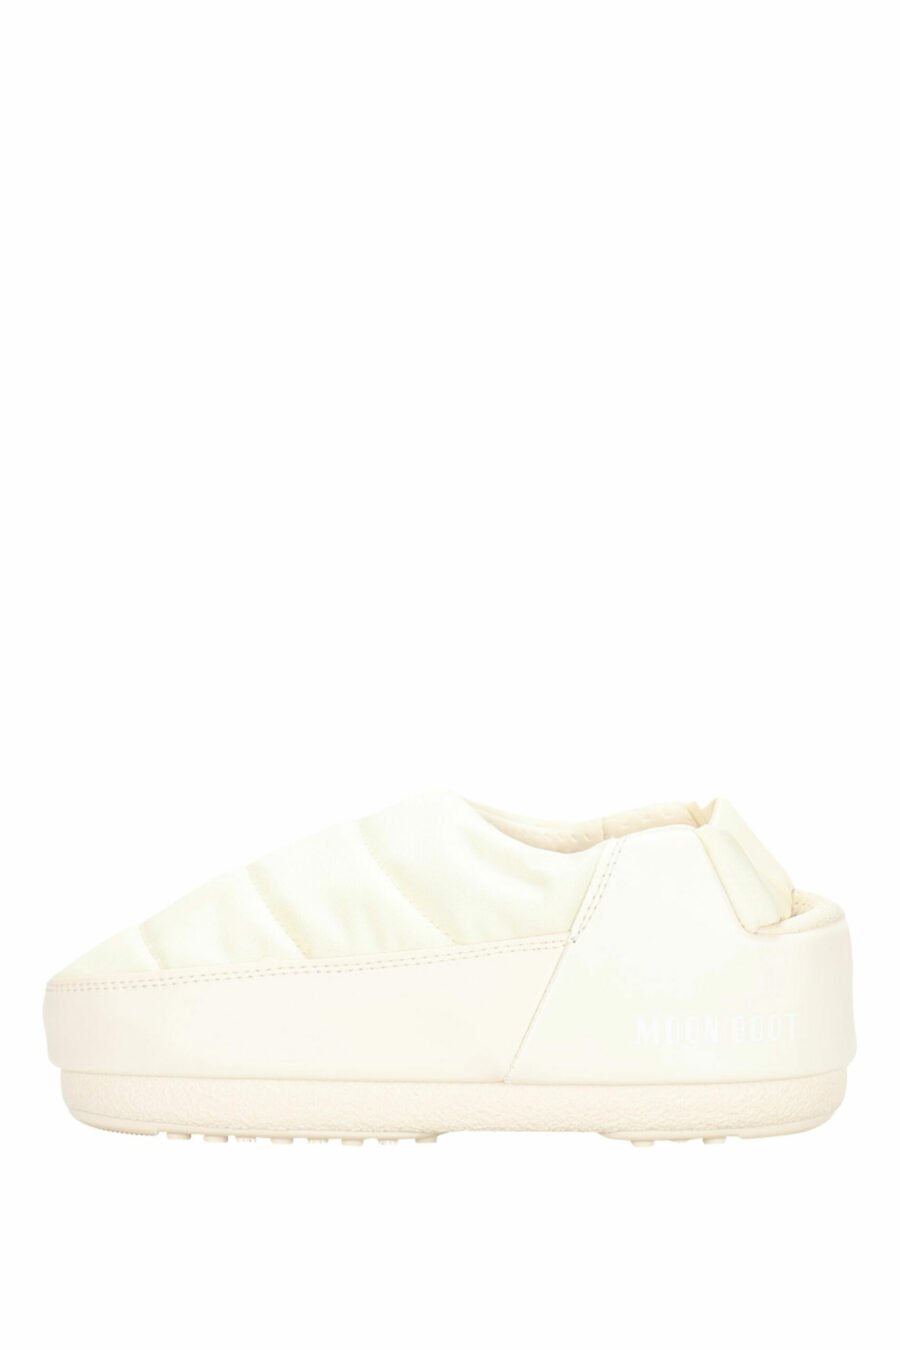 Sandales blanches avec mini-logo blanc - 8050032004080 3 échelles